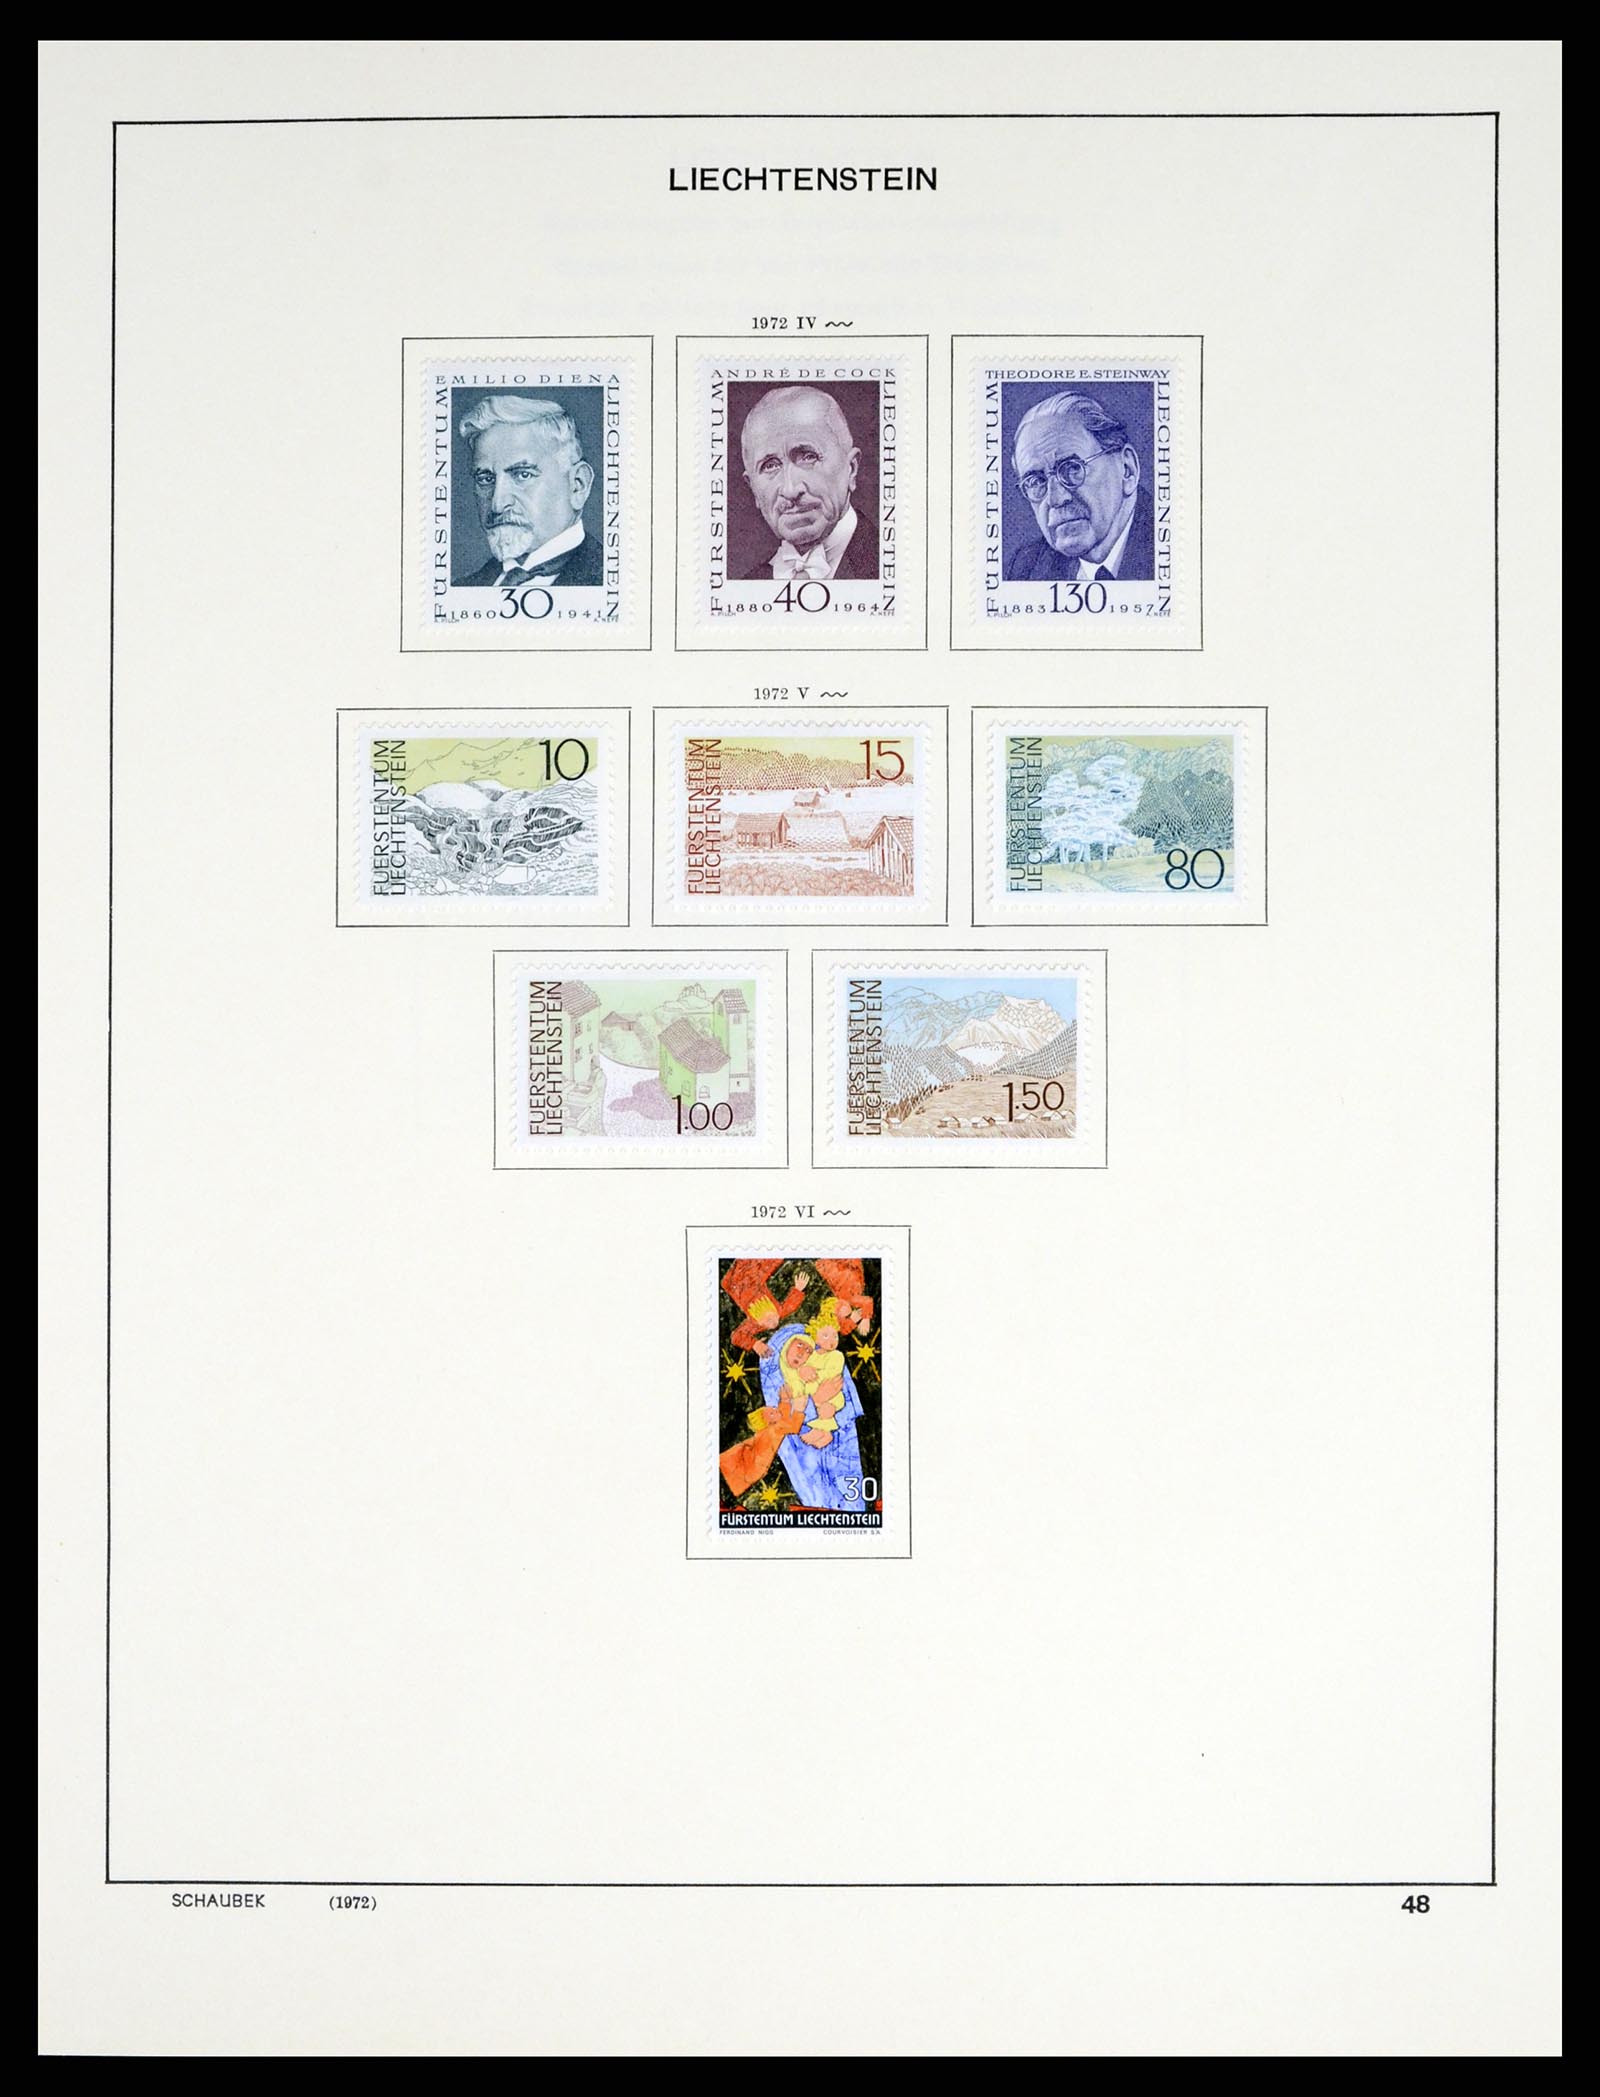 37547 059 - Stamp collection 37547 Liechtenstein 1912-2011.